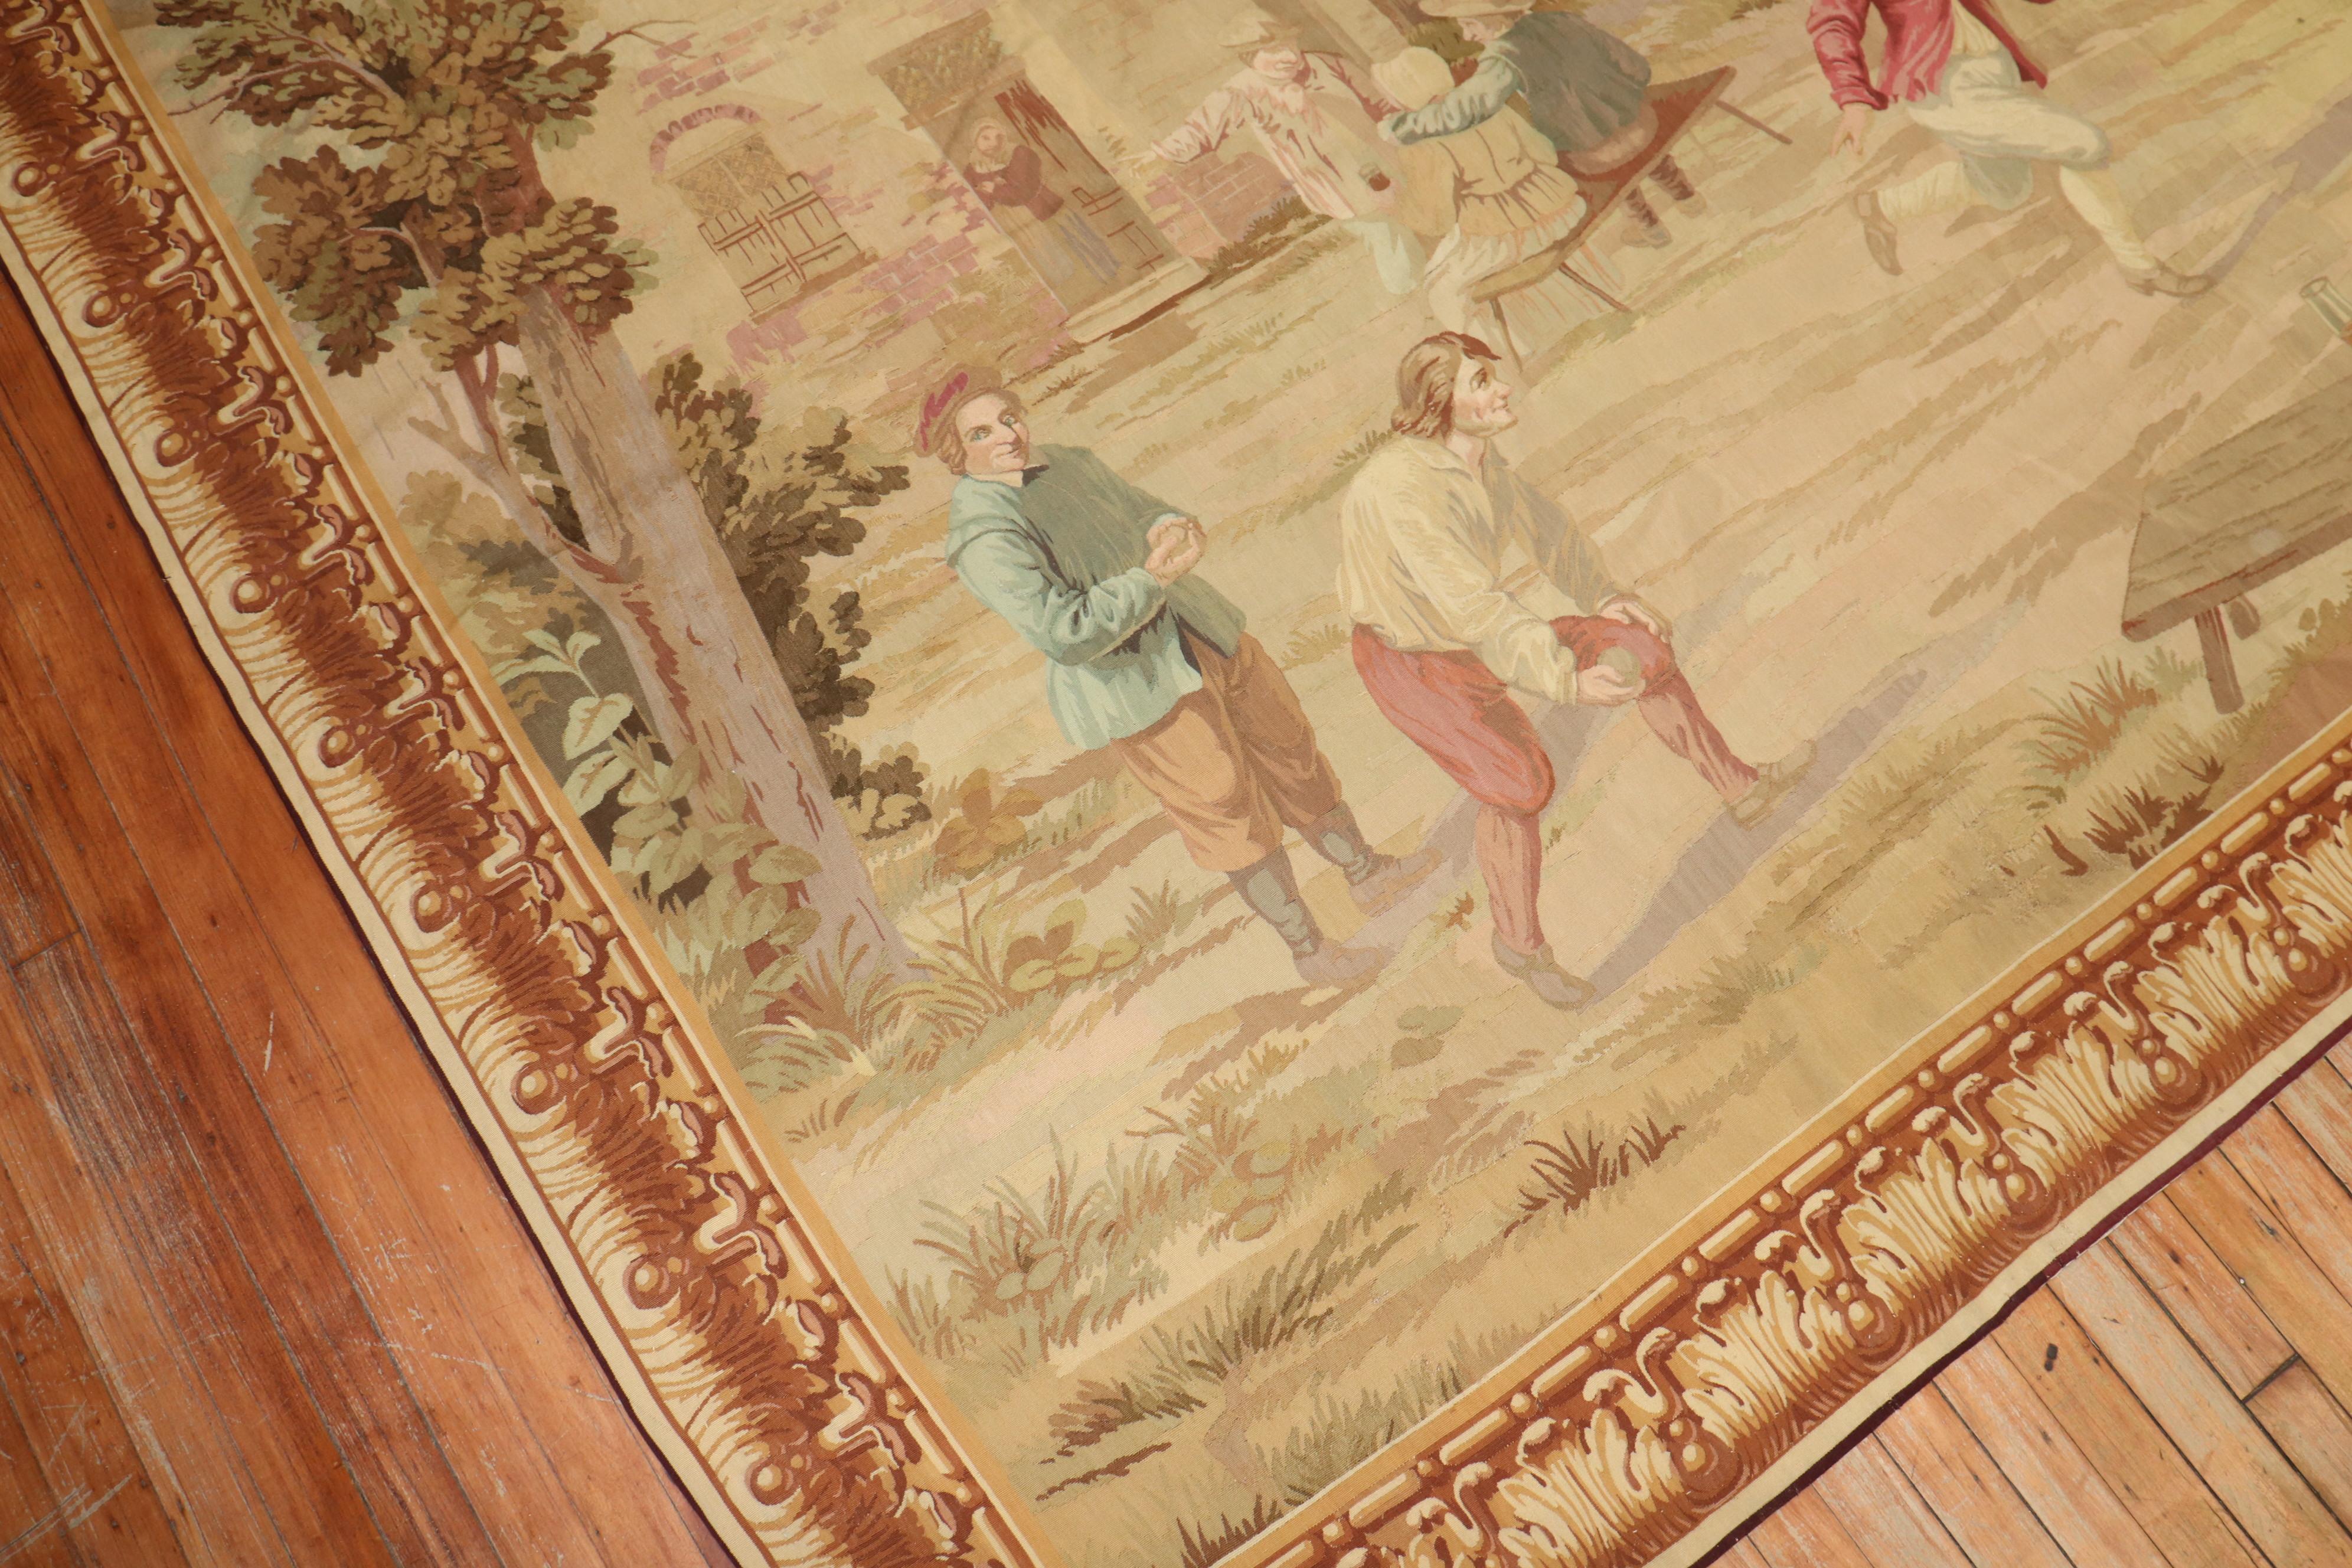 Grande tapisserie française du début du 19ème siècle de très belle qualité.

Mesures : 7' de large x 10'11'' de long.

Les tapisseries font partie intégrante du patrimoine culturel flamand. La plupart des tapisseries présentent des sujets